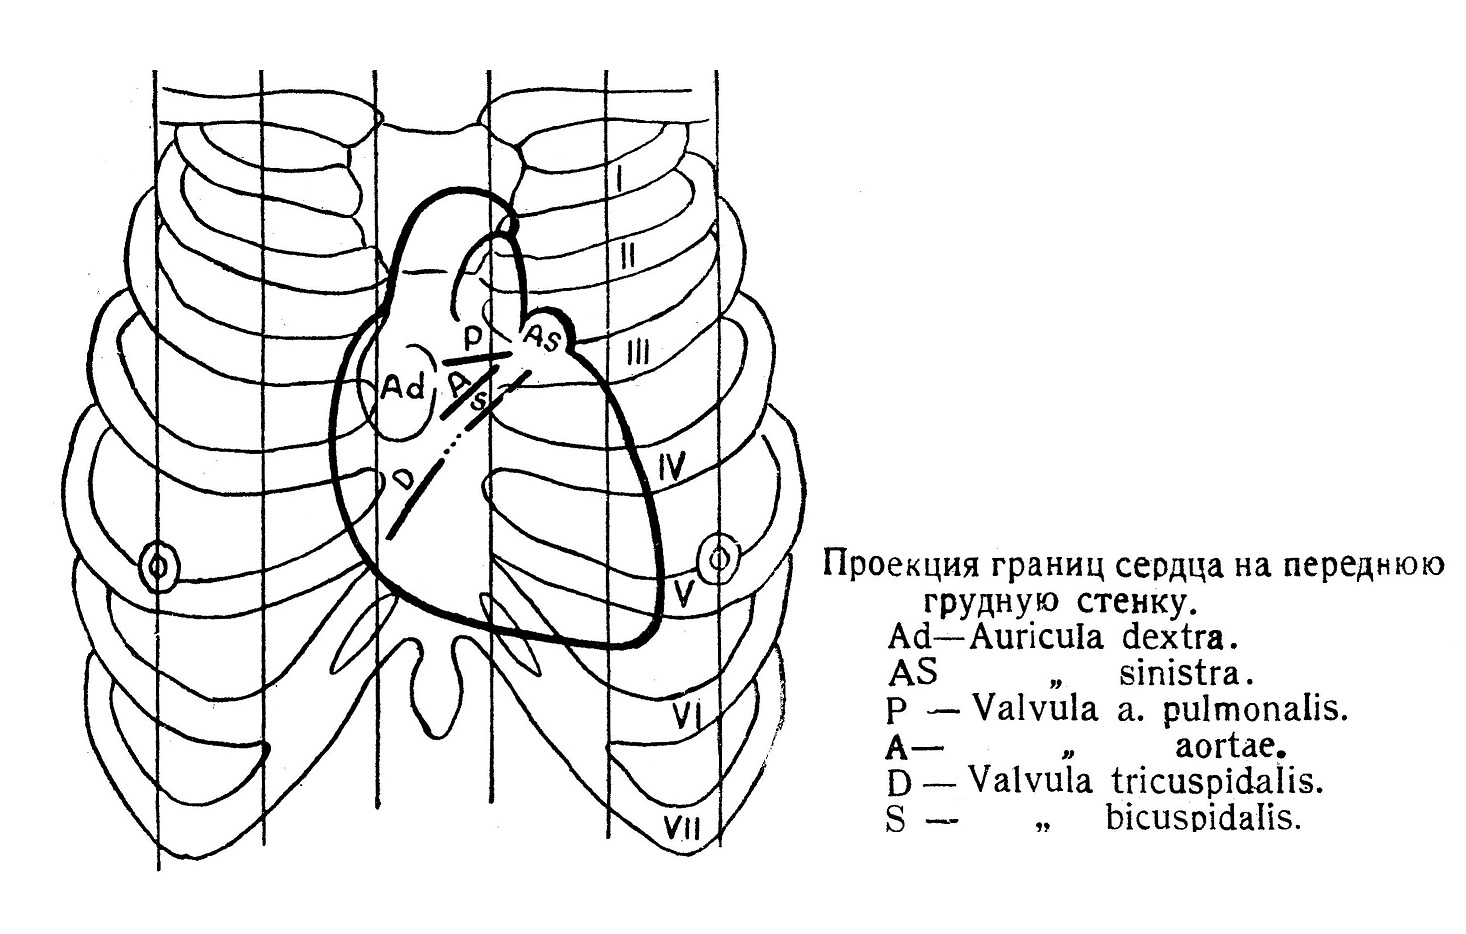 Проекция границ сердца на переднюю грудную клетку